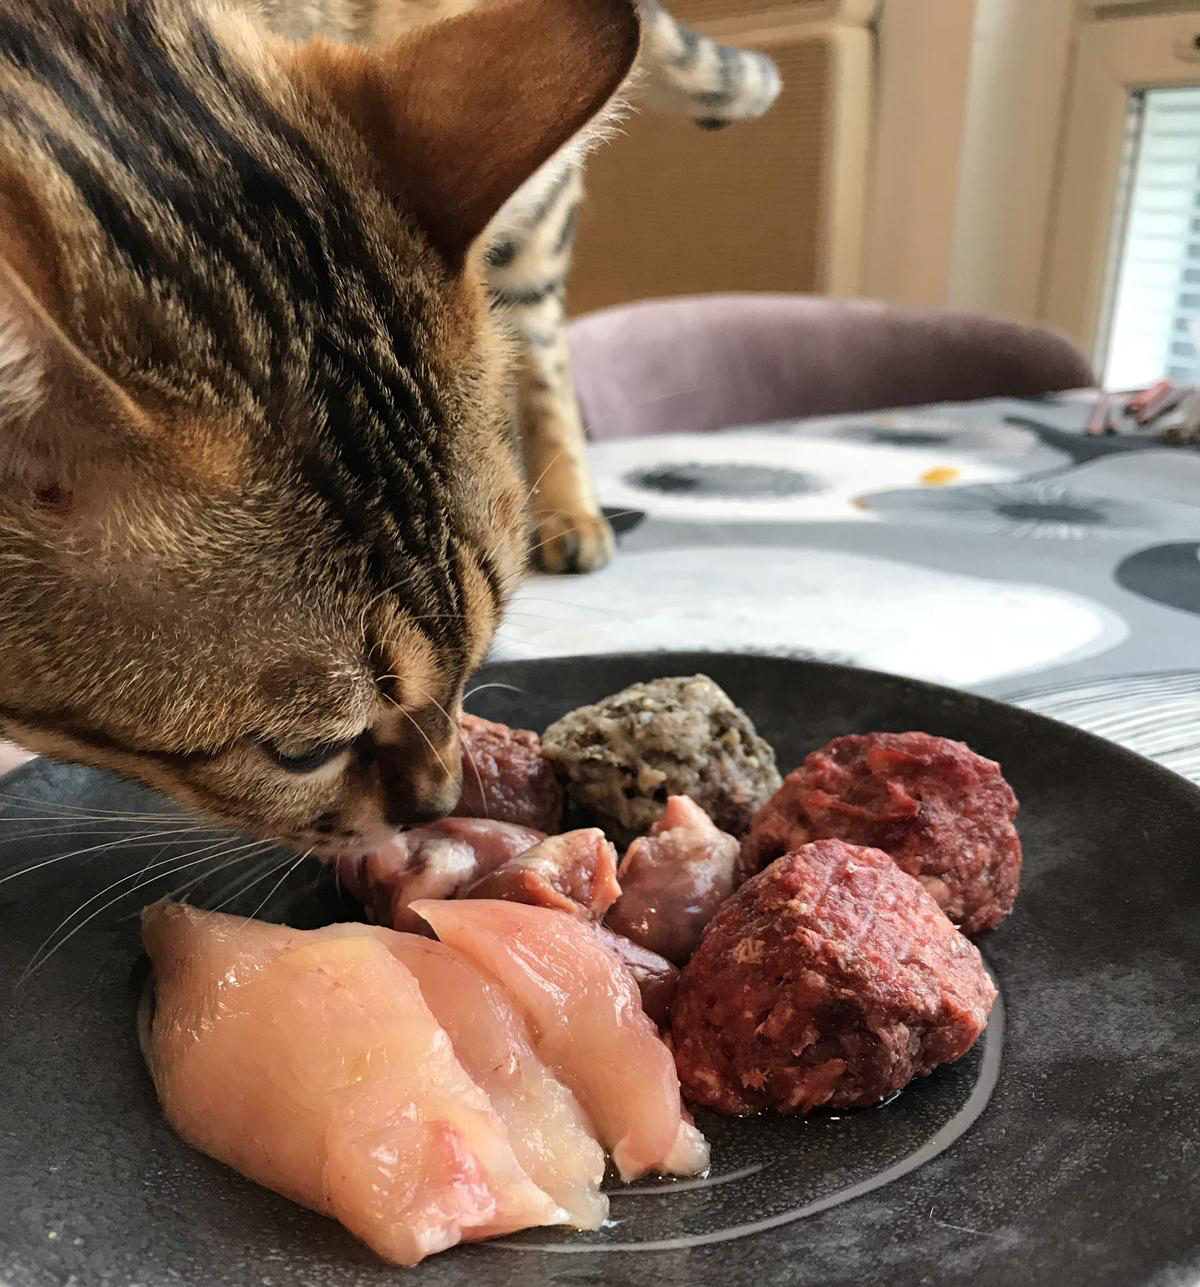 rått kött till katt